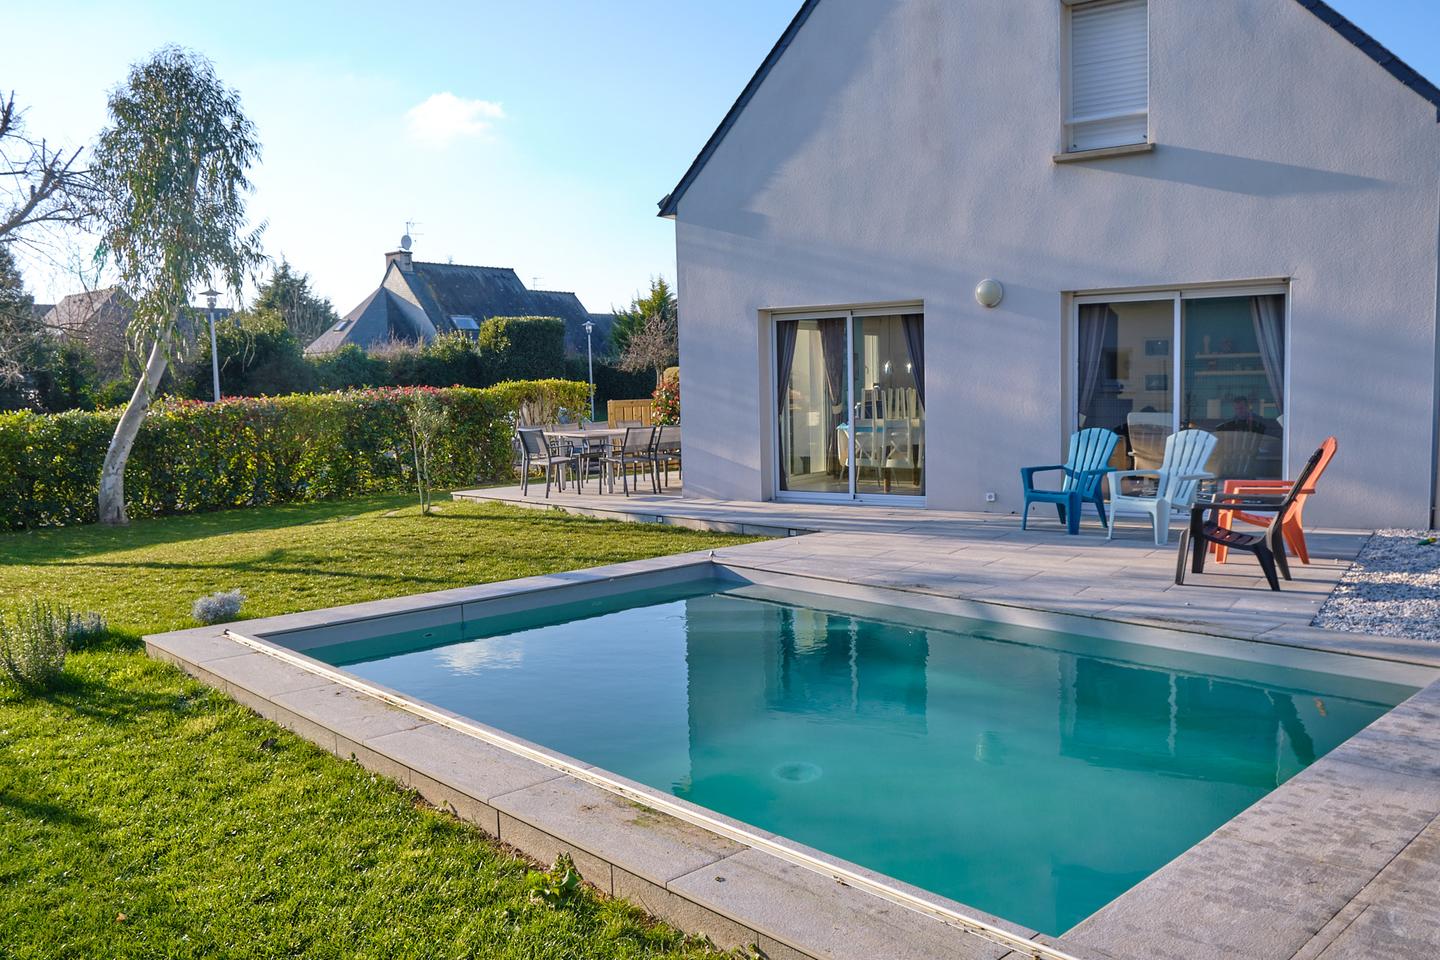 Hôte GreenGo: Grande maison familiale avec piscine pour 10 personnes, 12 max. Note de 4.9 sur une autre plateforme - Image 5